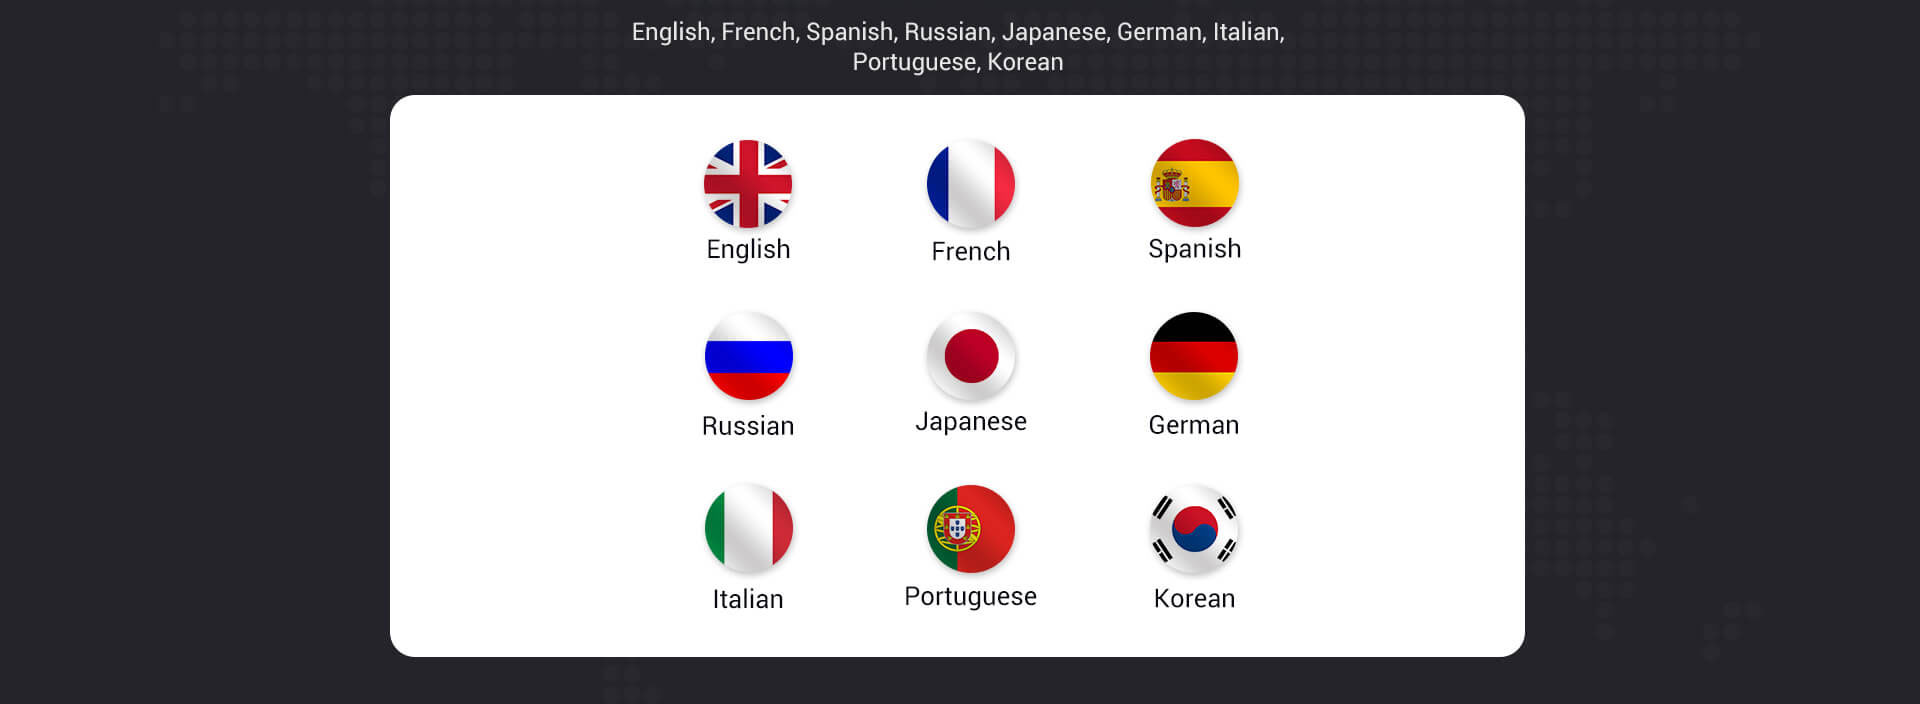 Support Multi-Languages